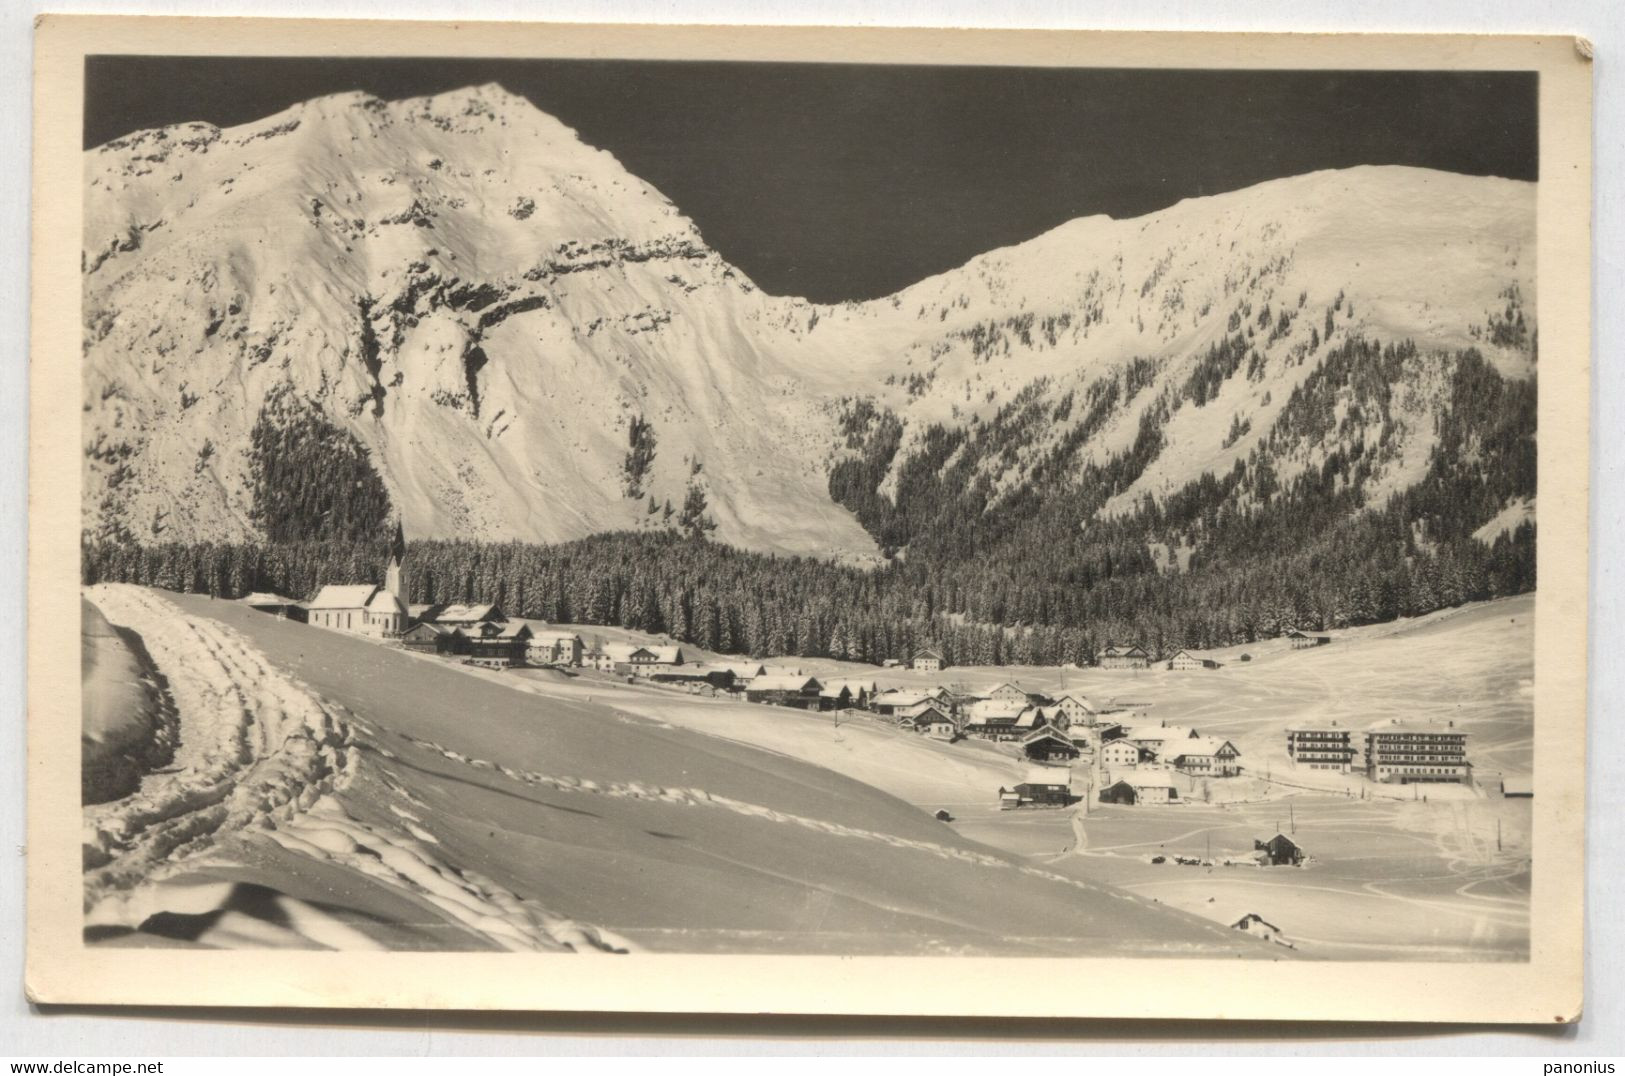 Berwang Tirol Austria, Year 1940 - Berwang